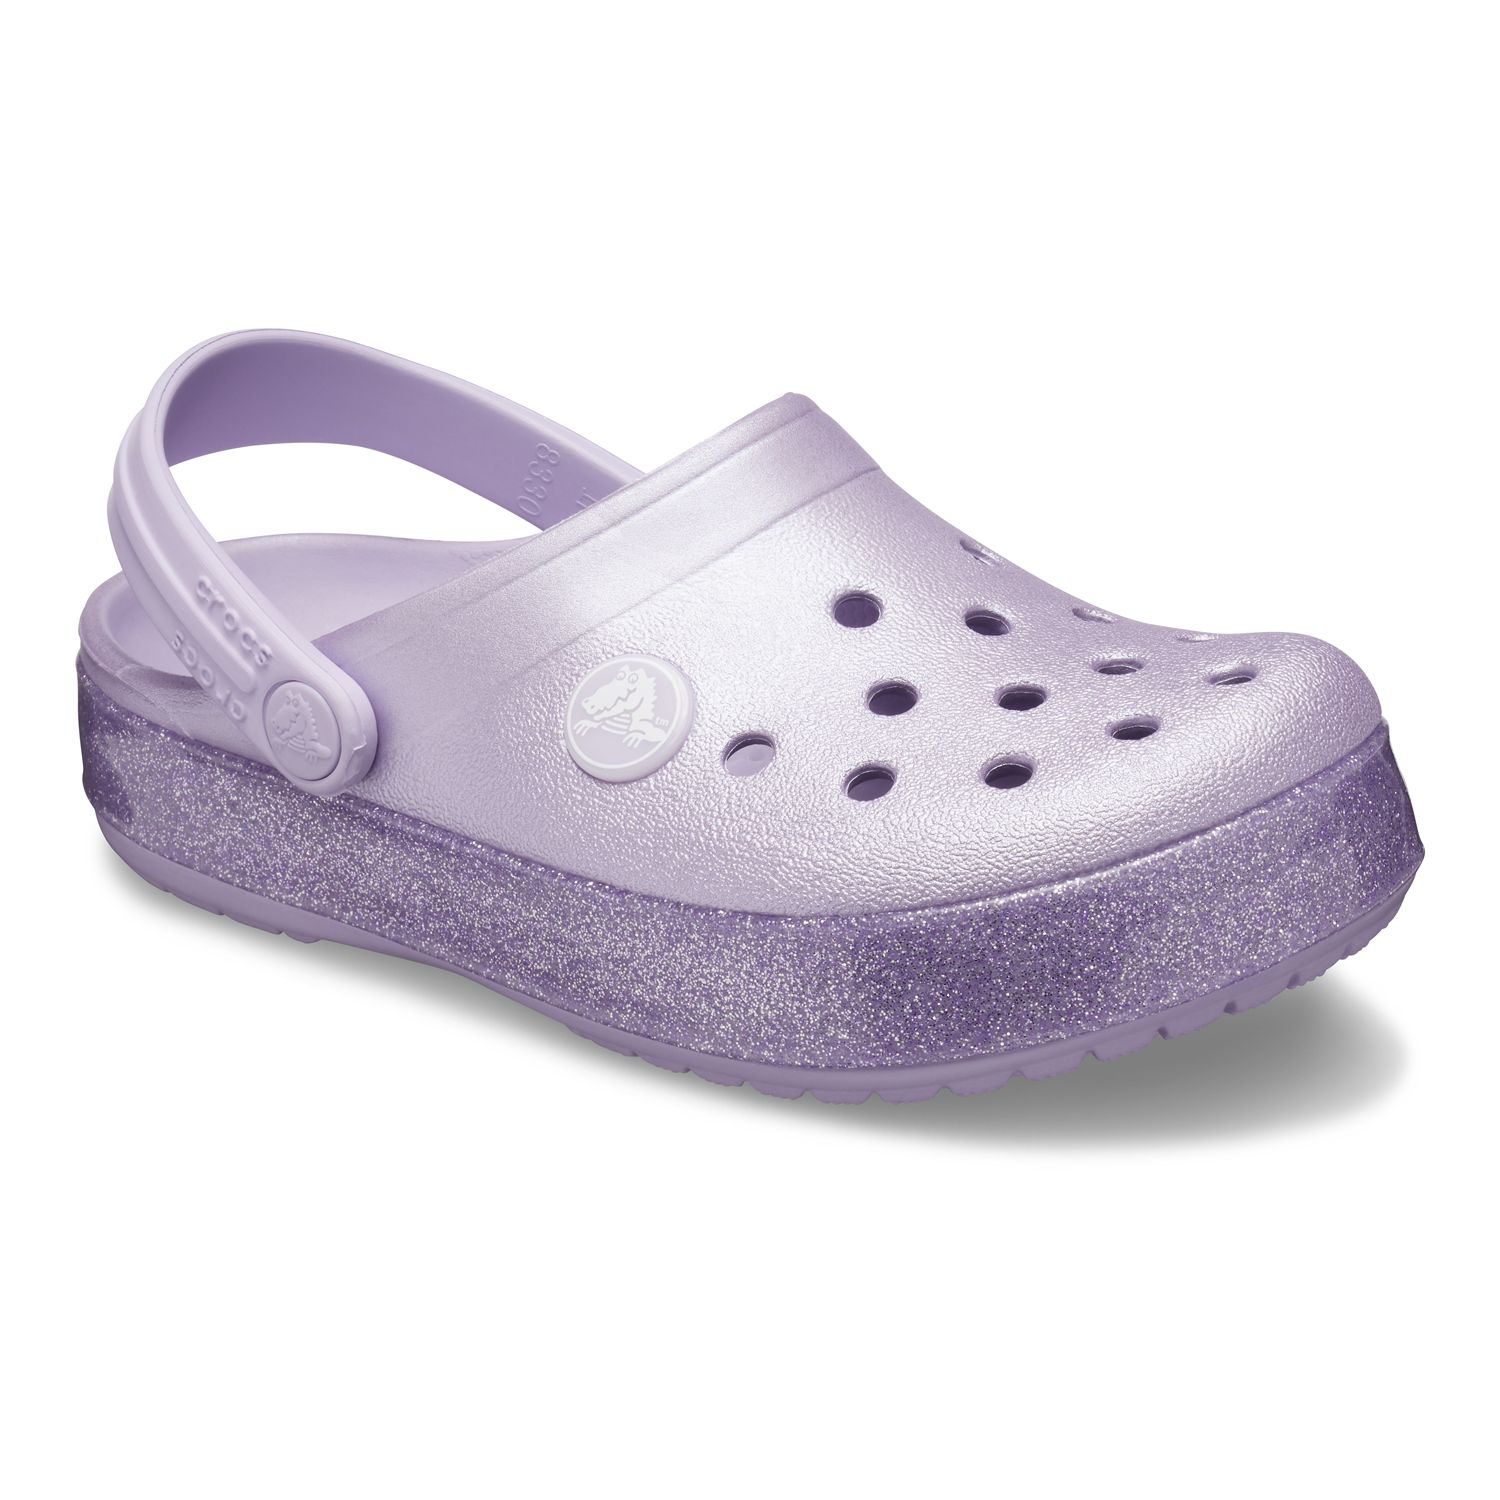 kohls girls crocs